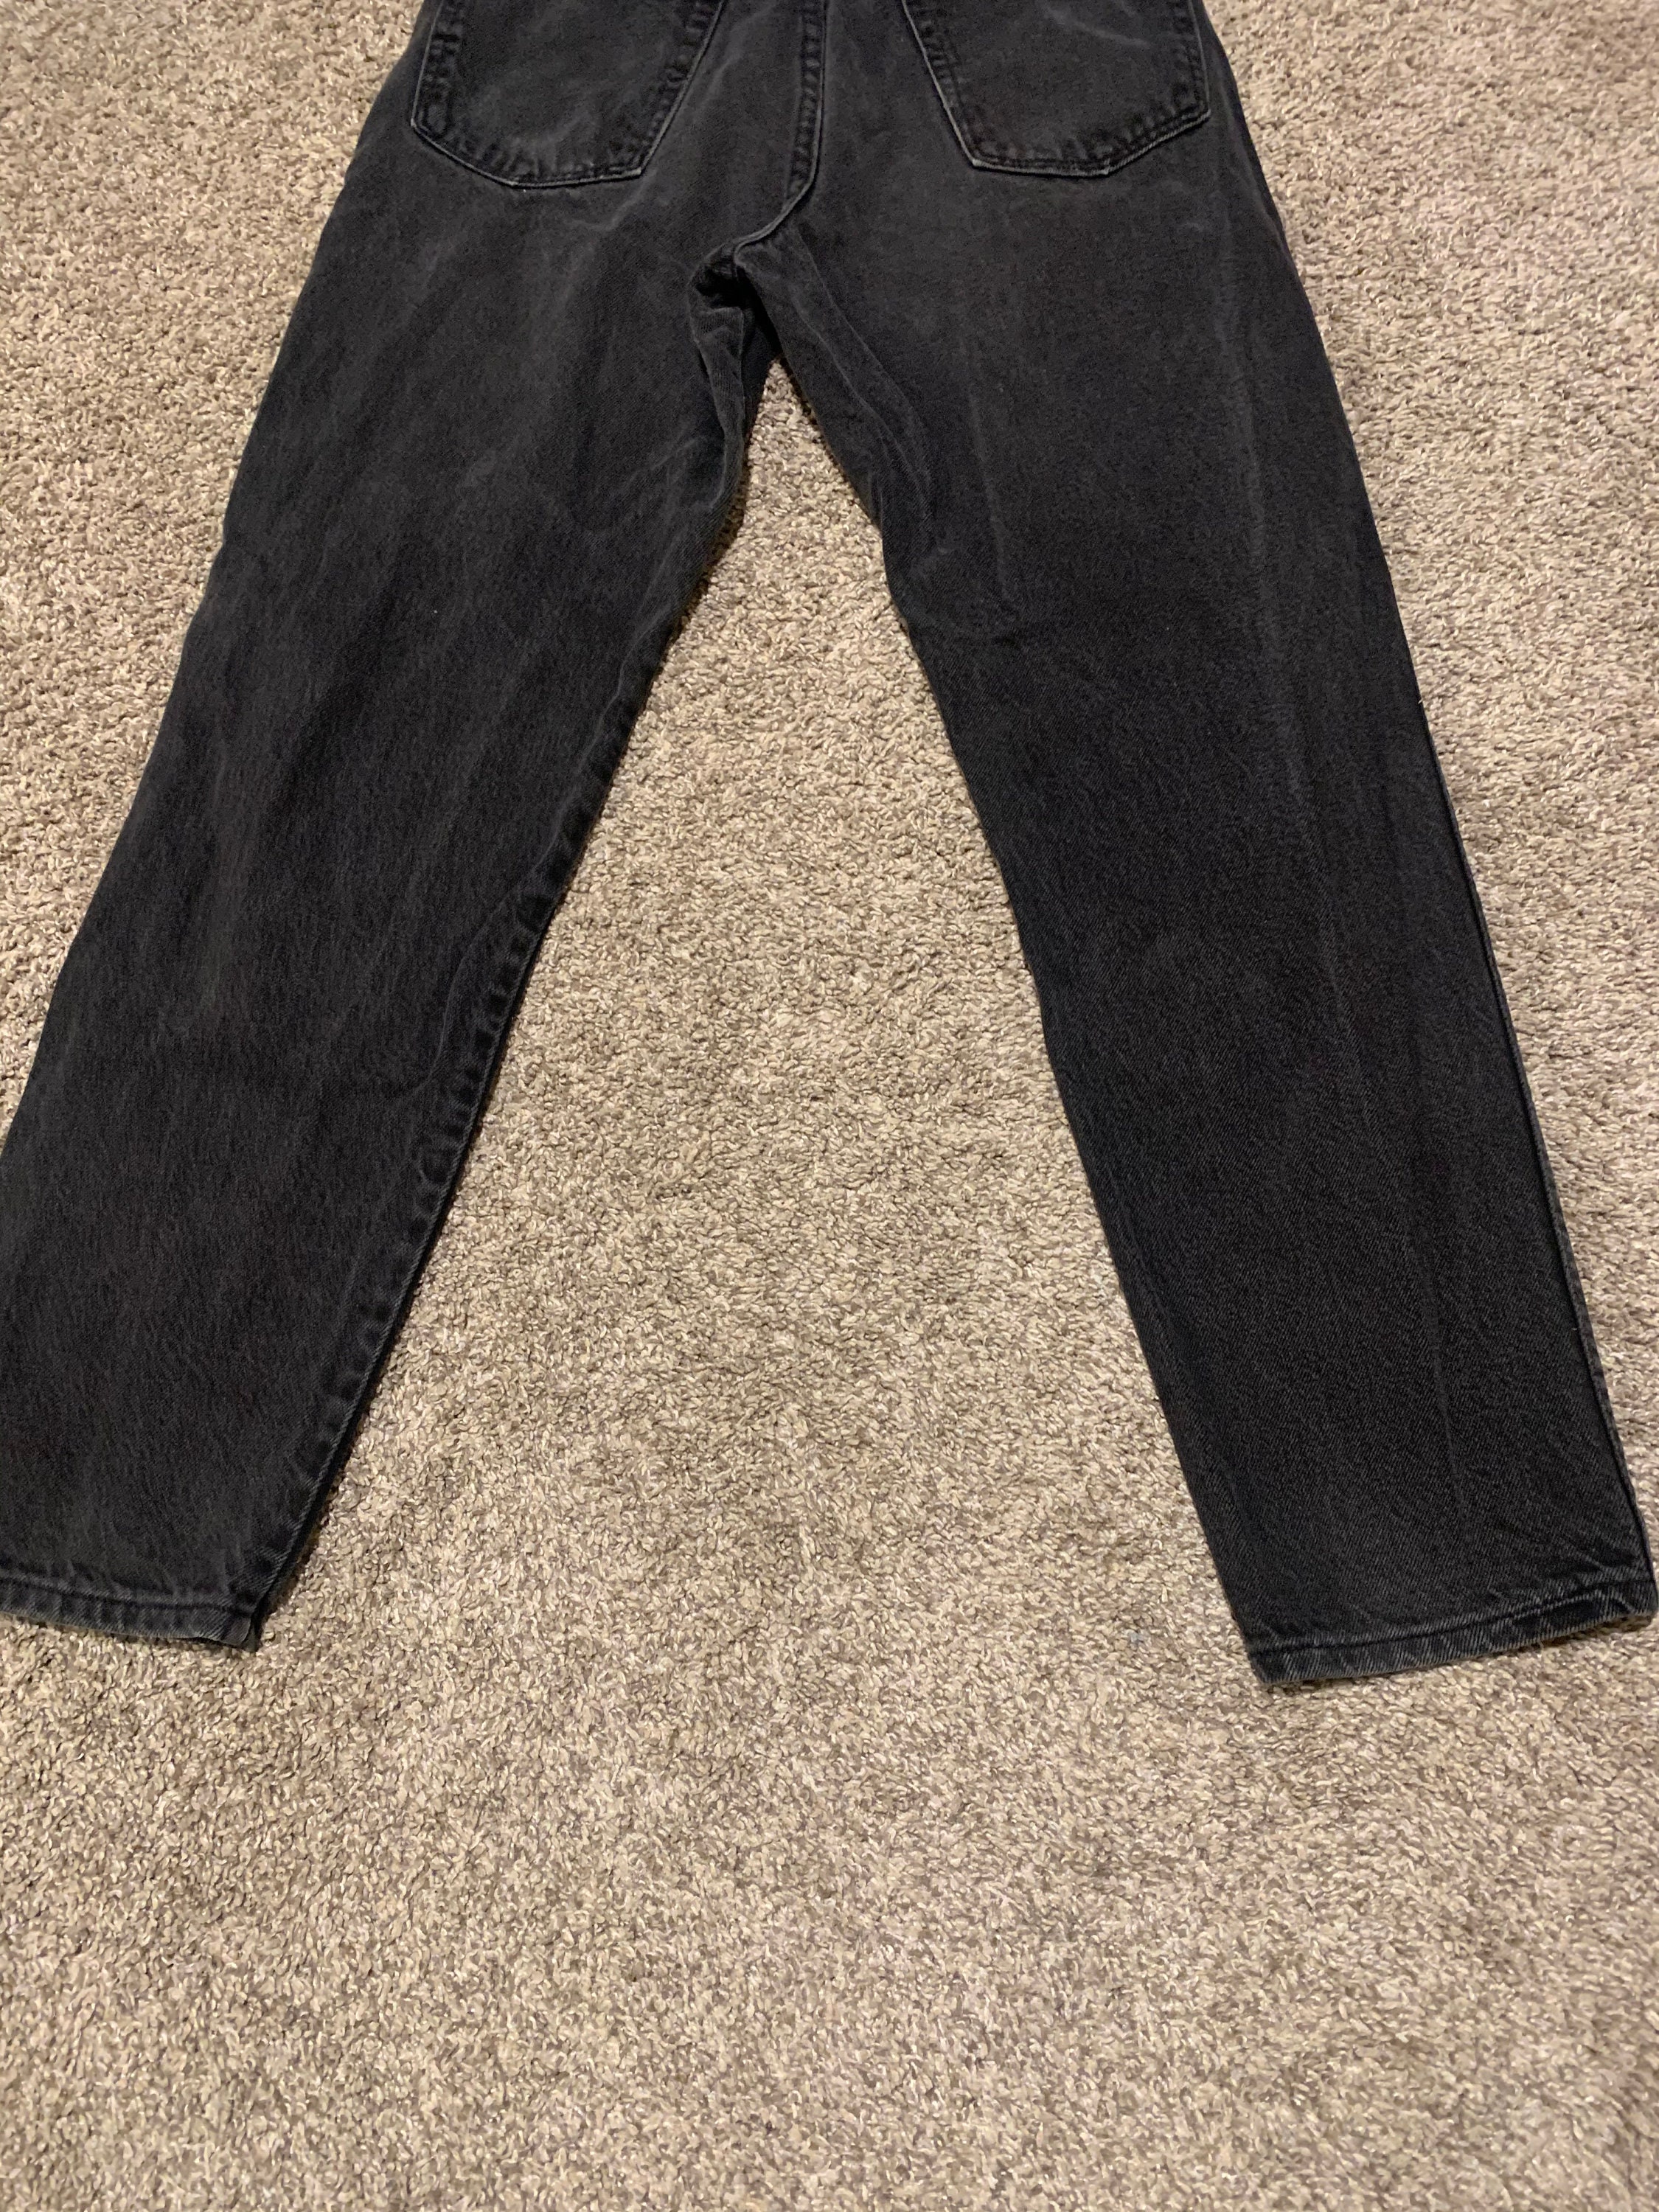 Vintage 90s Wrangler Black Jeans 31 31 32 32 Waist Vtg 1990s | Etsy